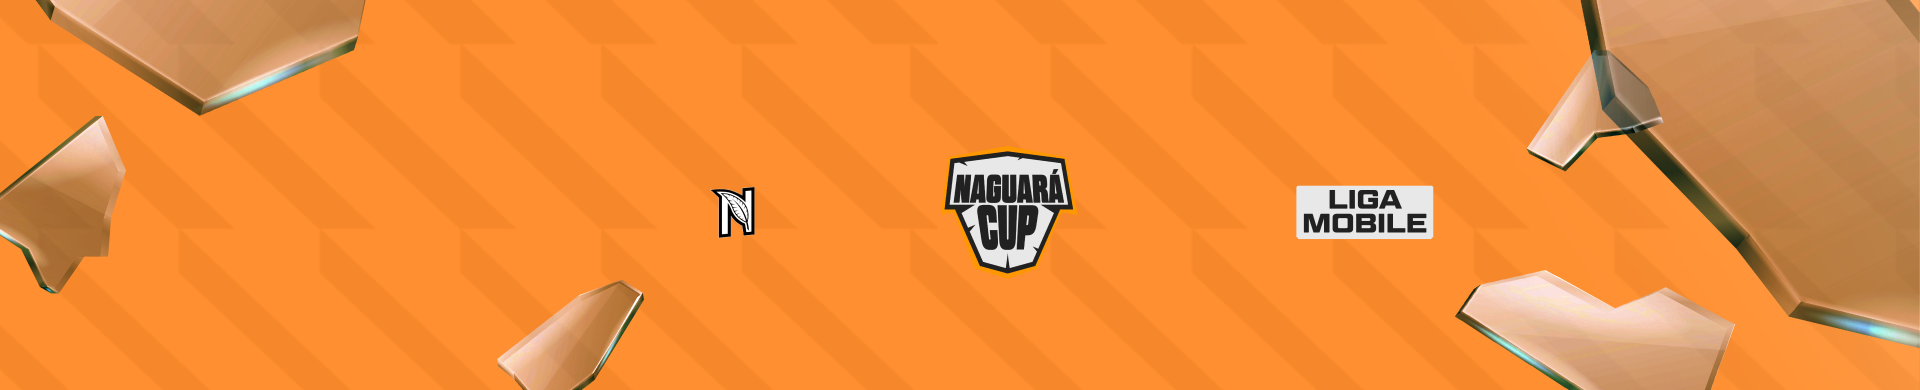 Naguará Cup Mobile Serie C Q2 - FreeFire - US